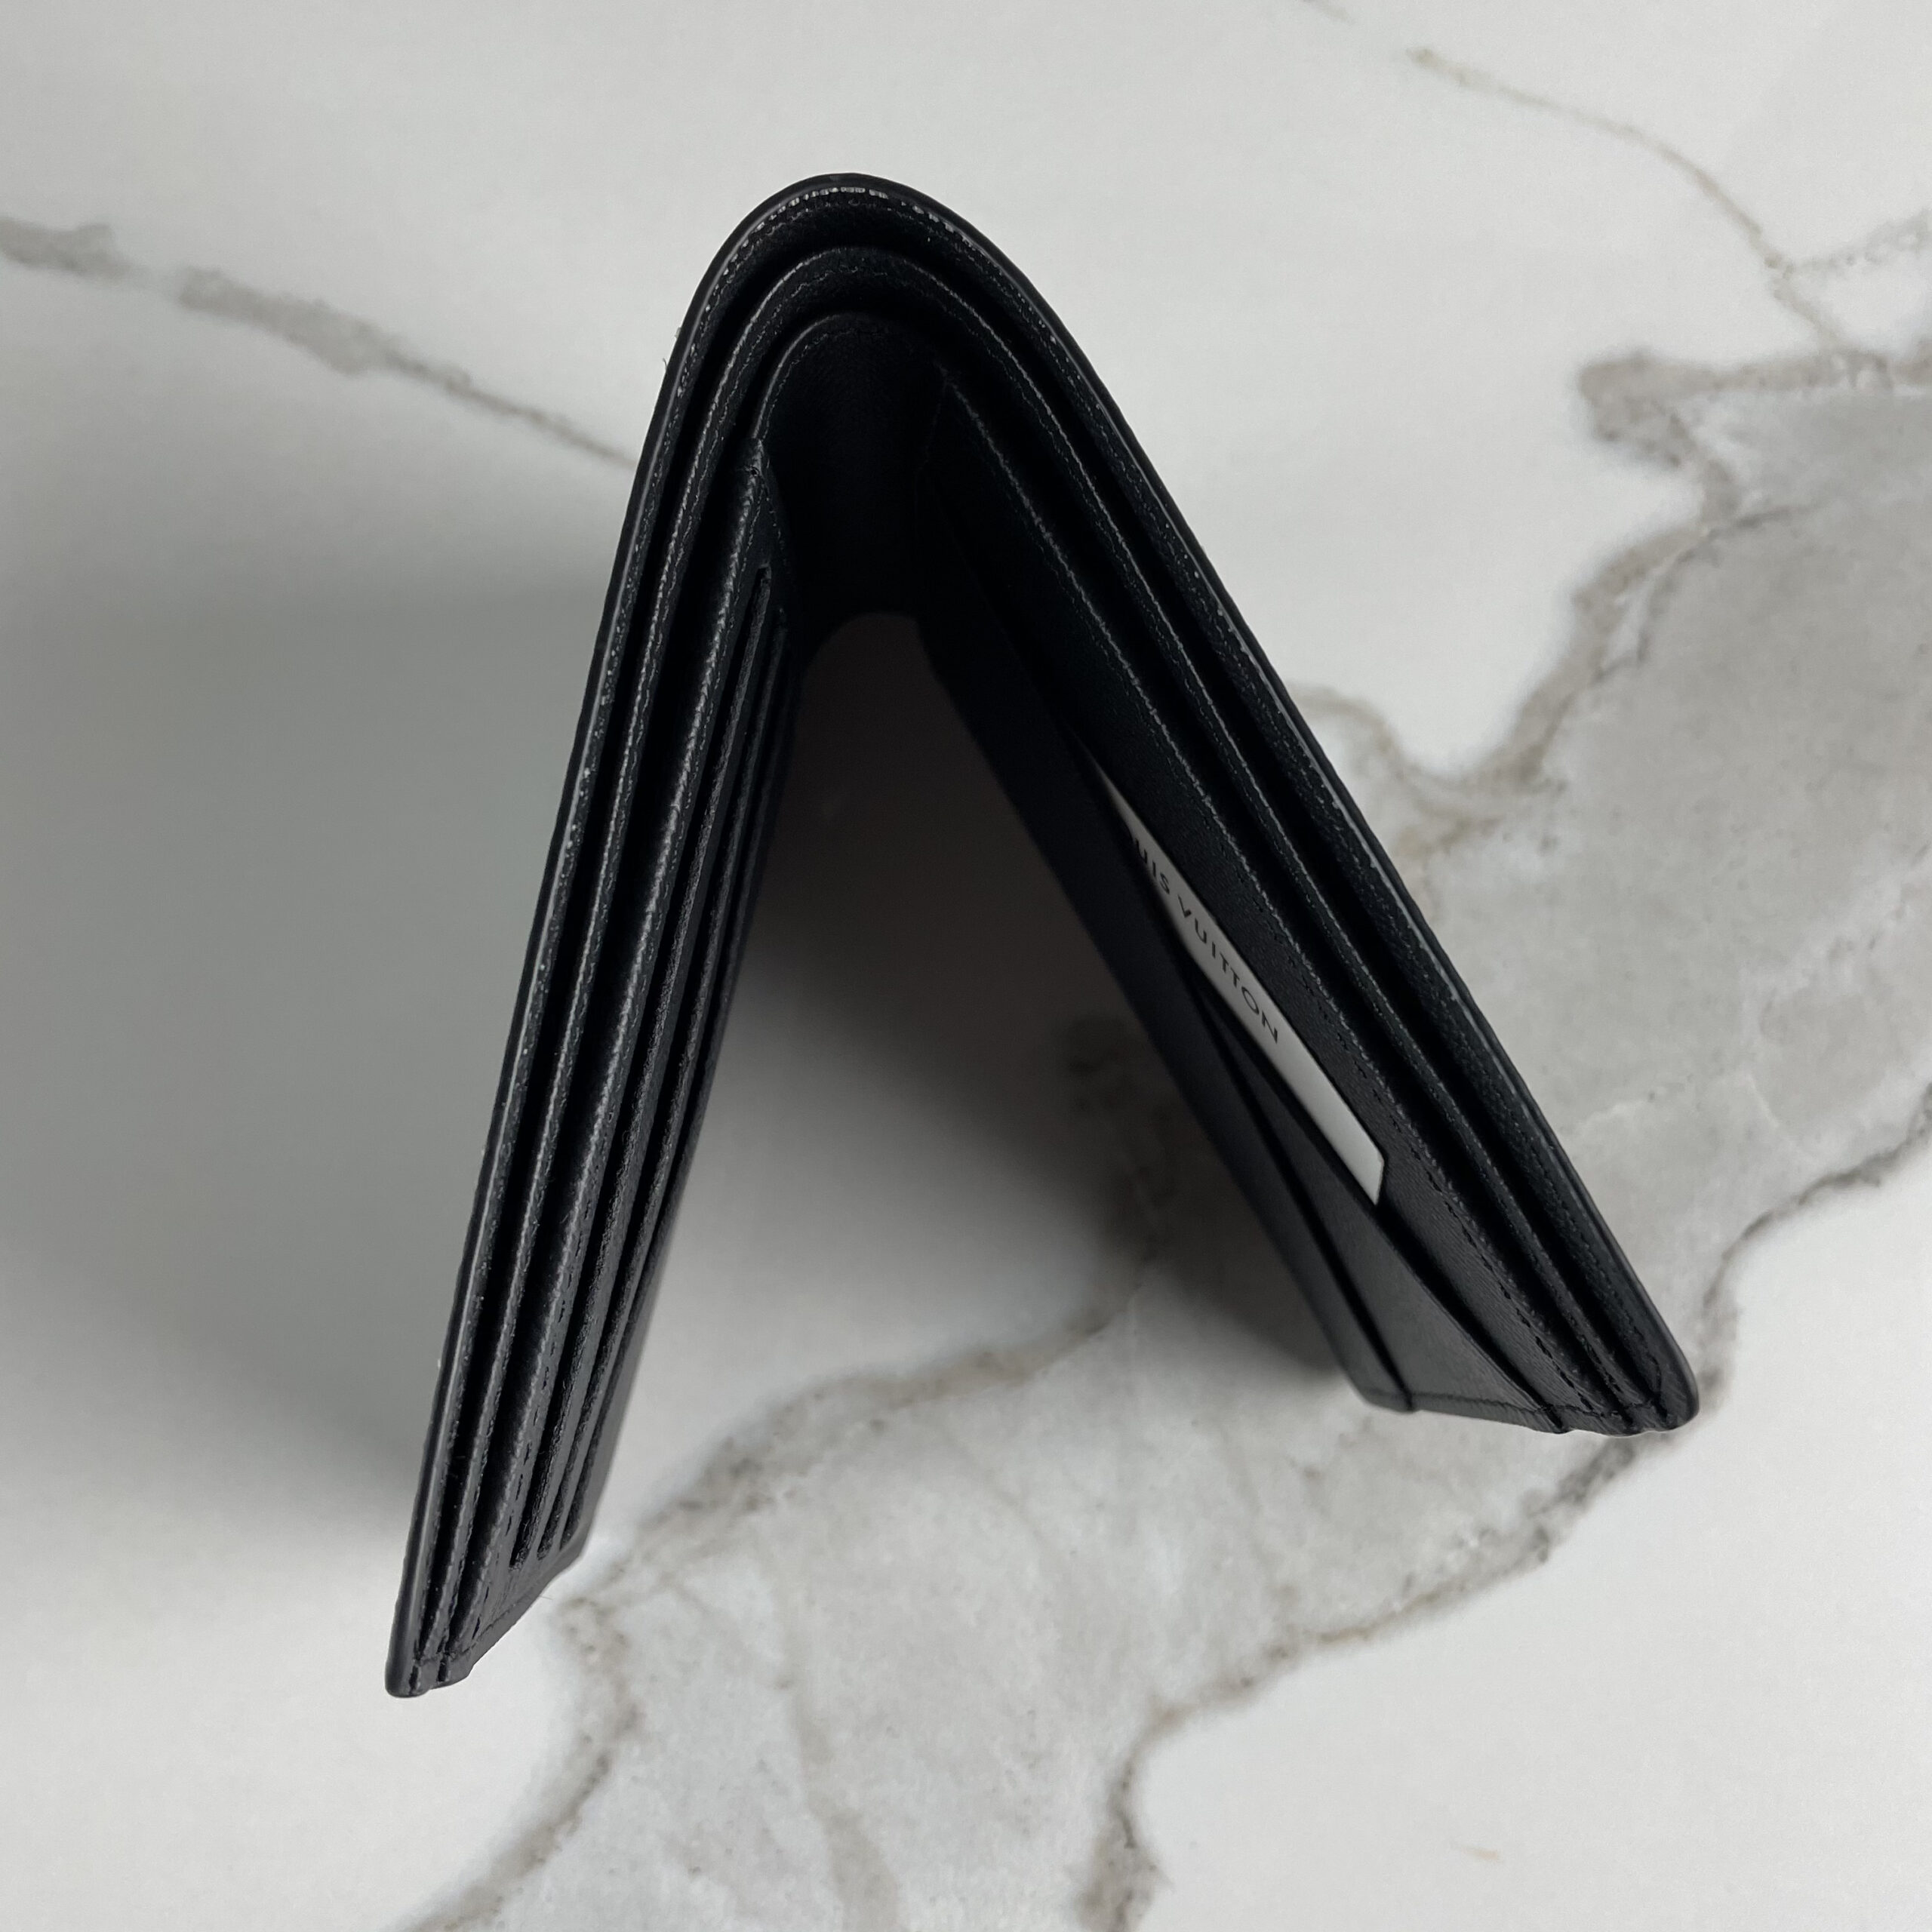 Louis Vuitton Multiple wallet - Kleeq